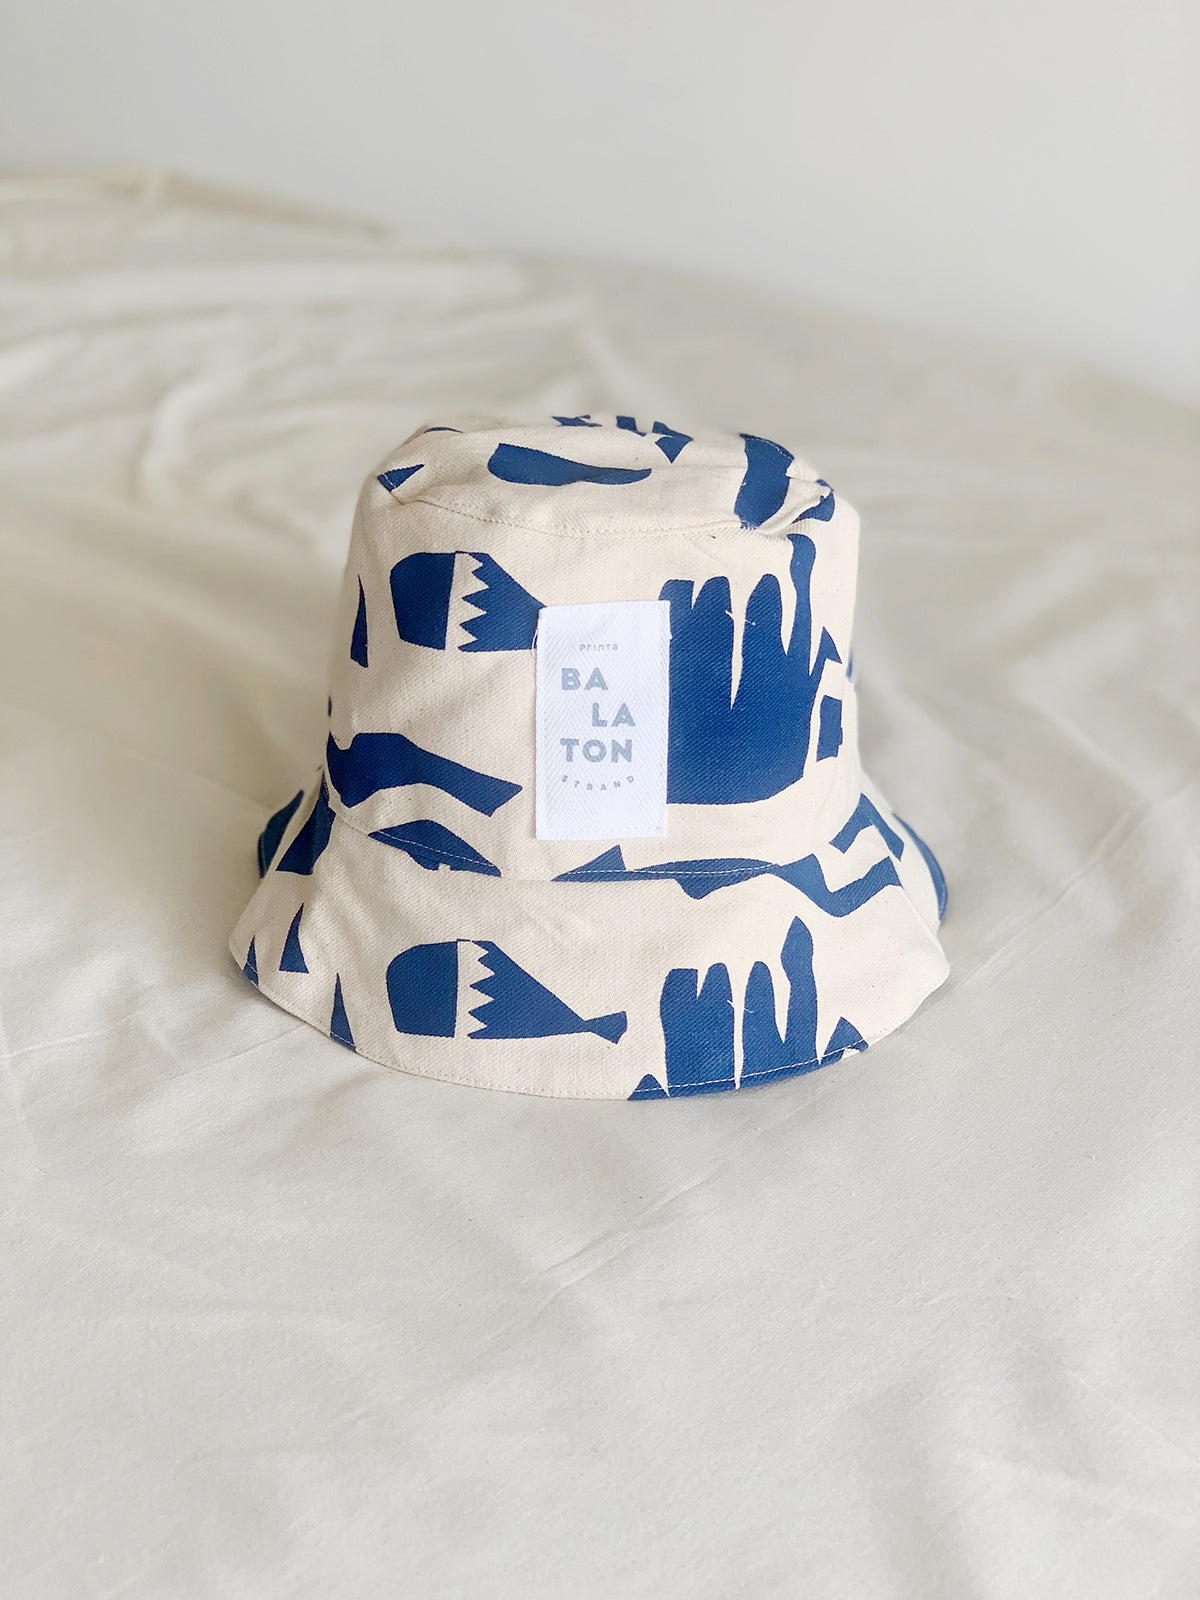 BEACH Balaton patterned bucket hat